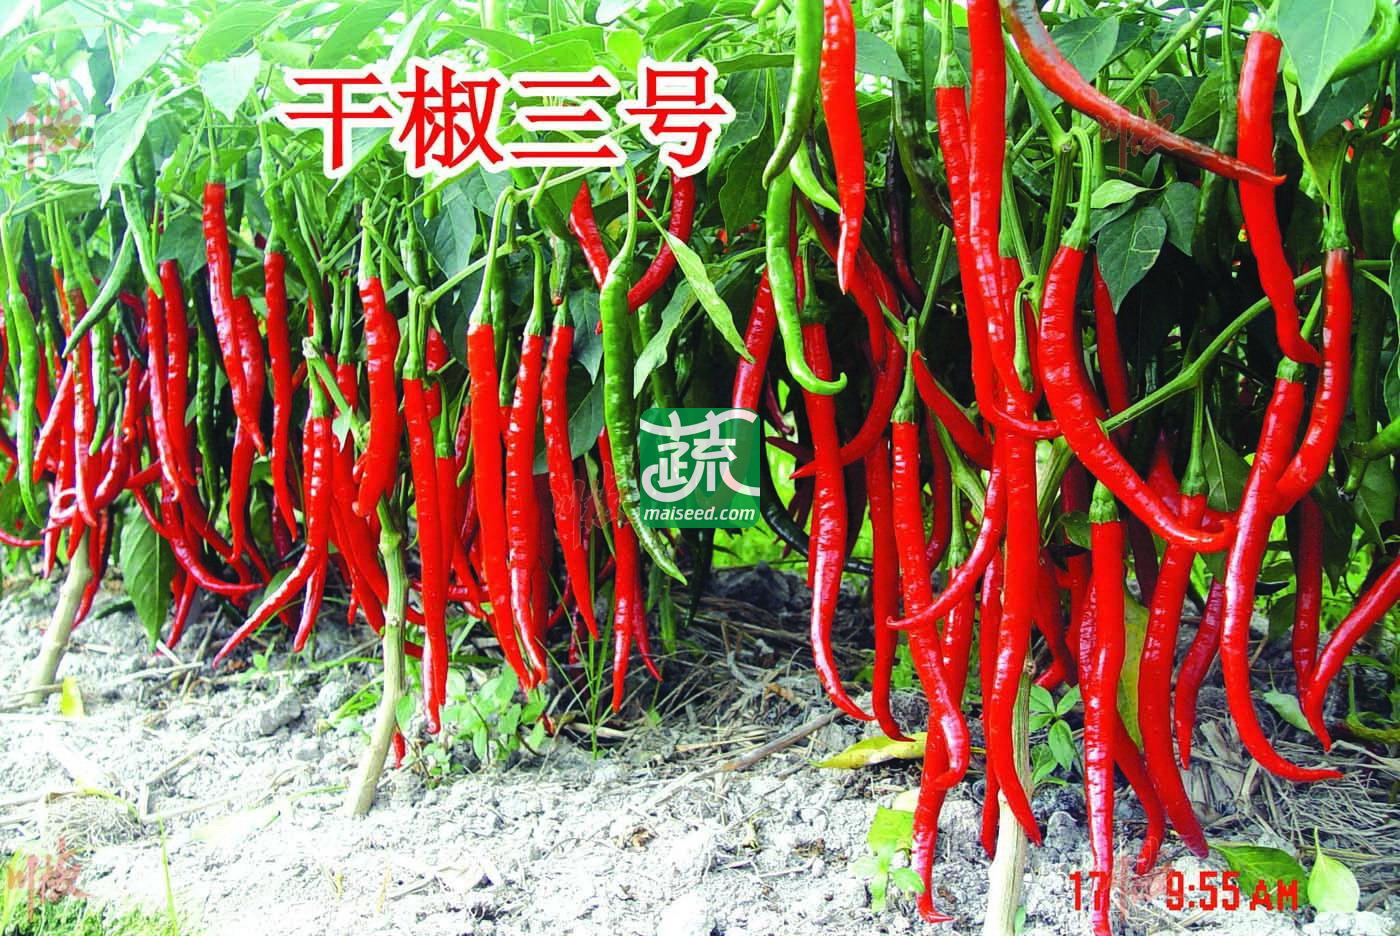 四川川椒 干椒三号辣椒种子 鲜红椒产量3500~4000kg 干椒产量700~800kg 干制和加工豆瓣酱的最佳品种 辣椒种子 8克装